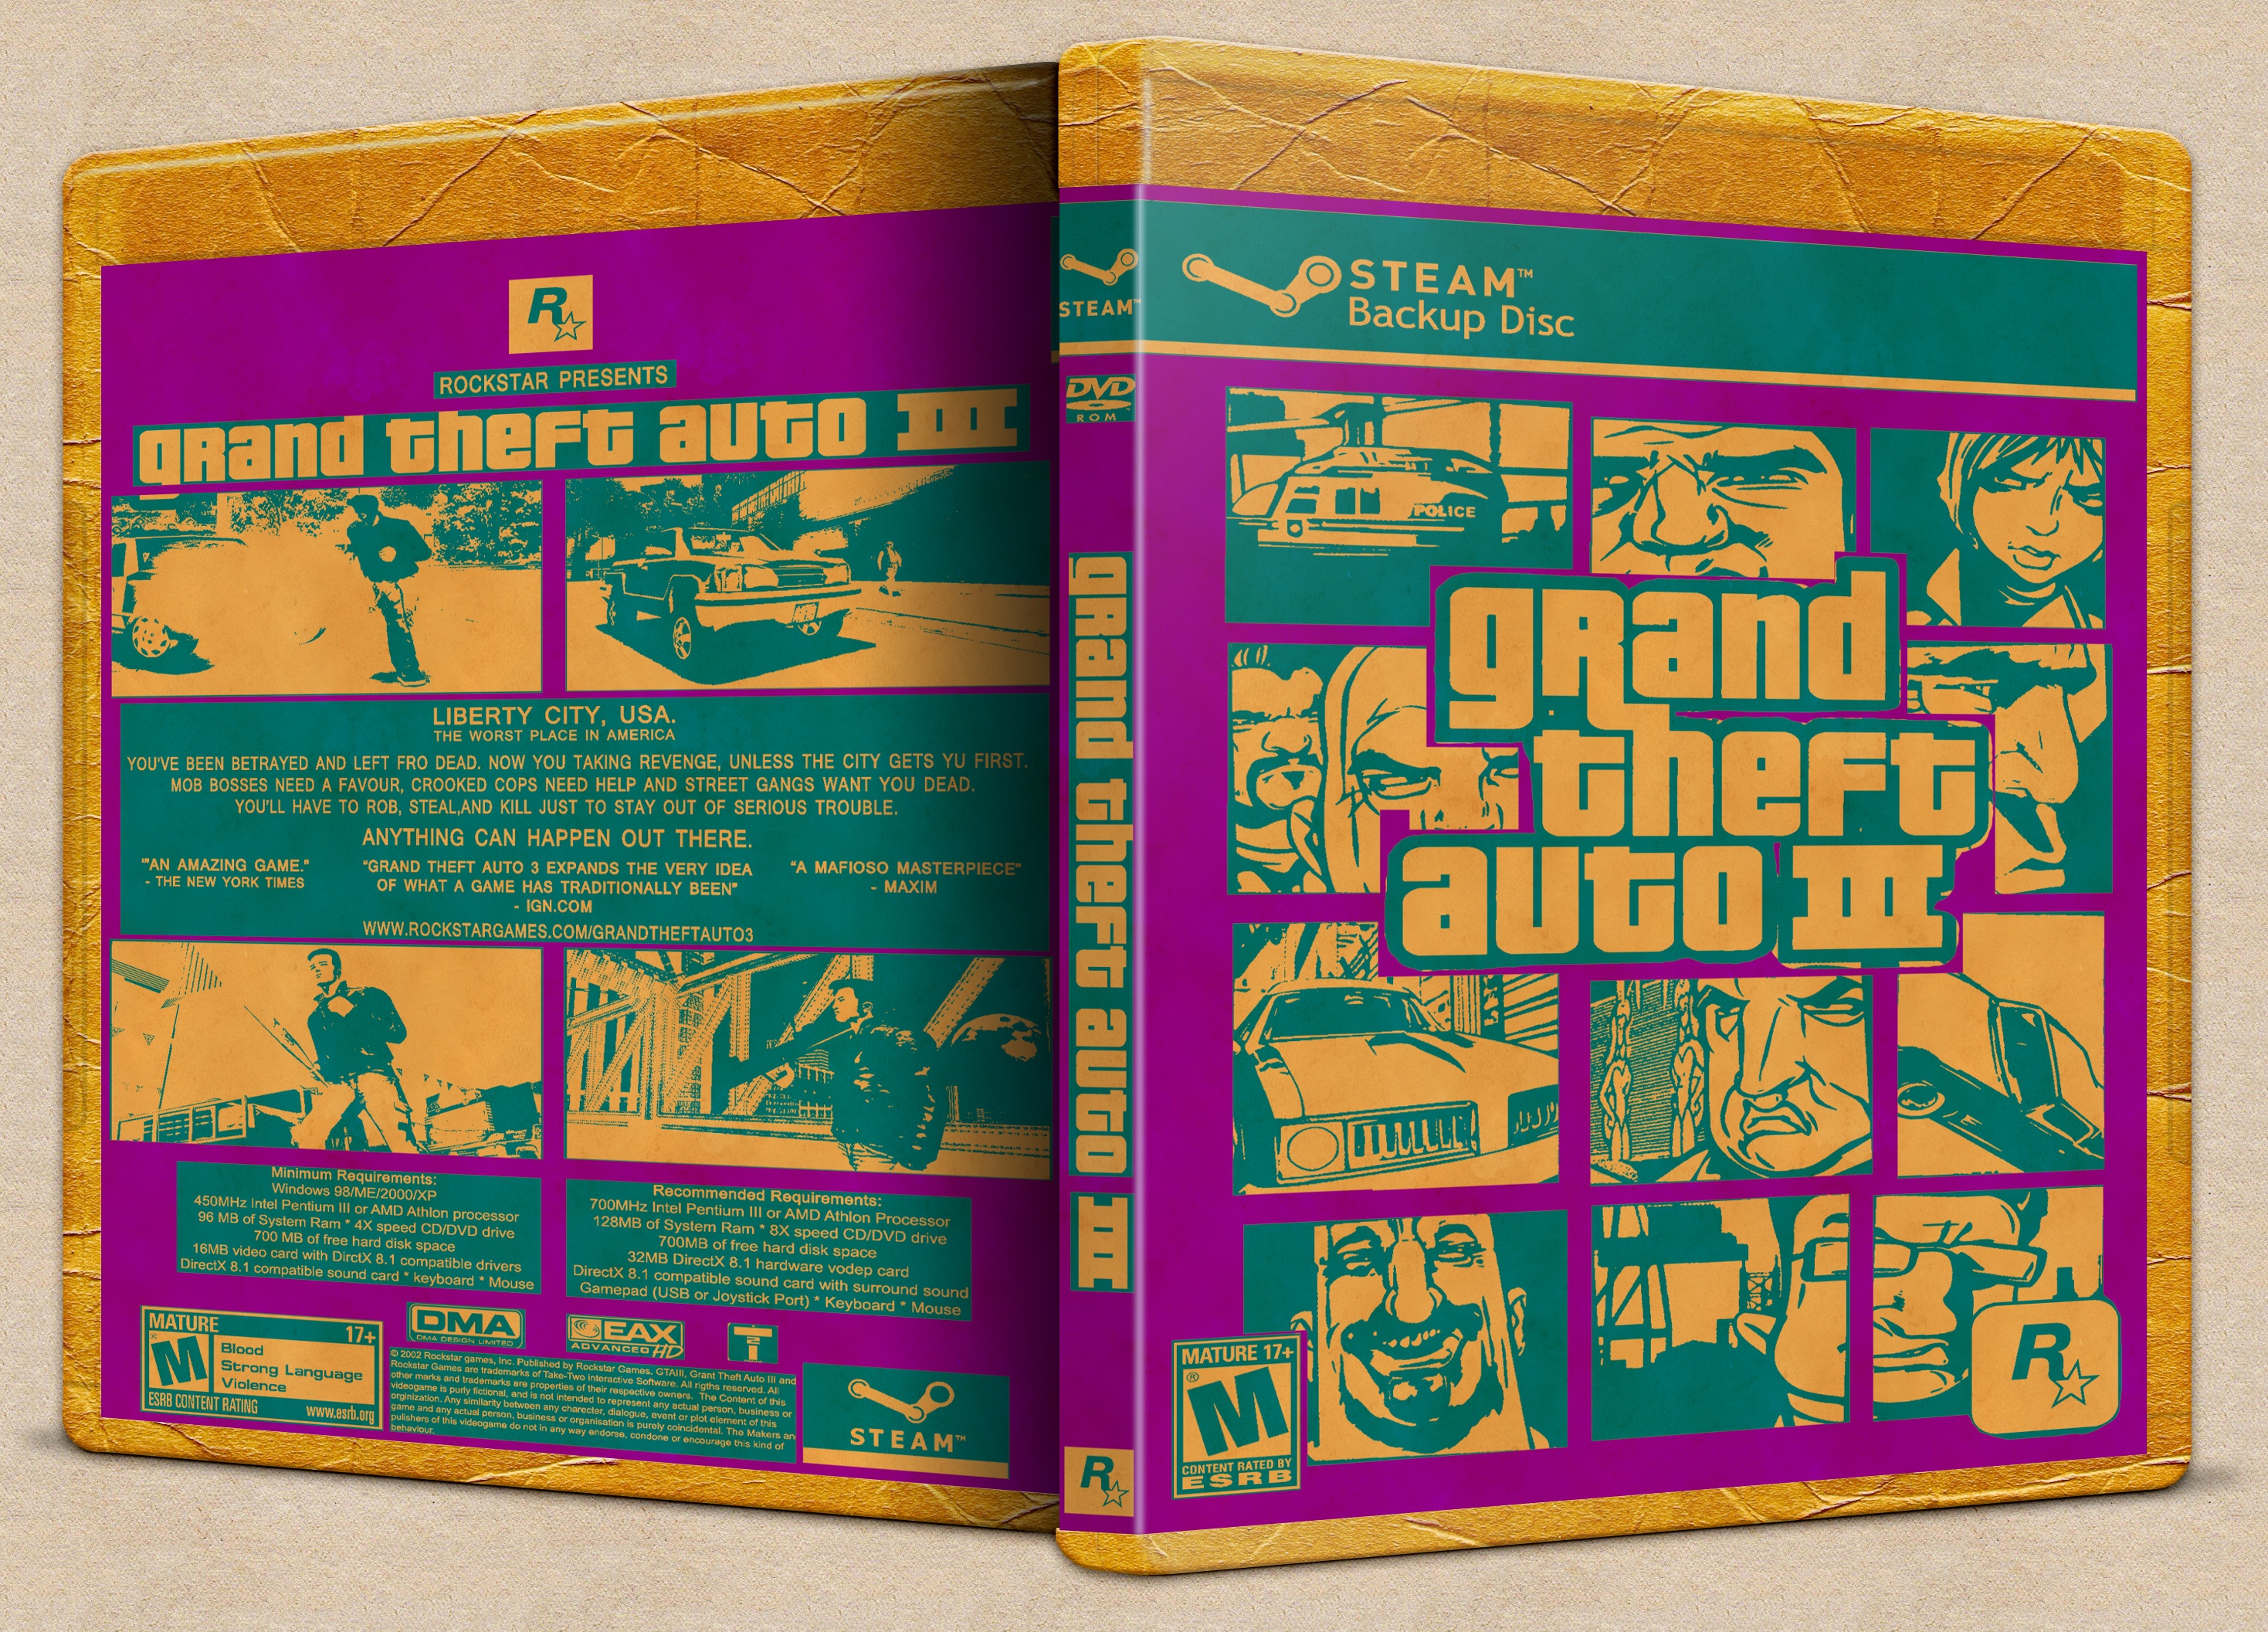 Grand Theft Auto III box cover